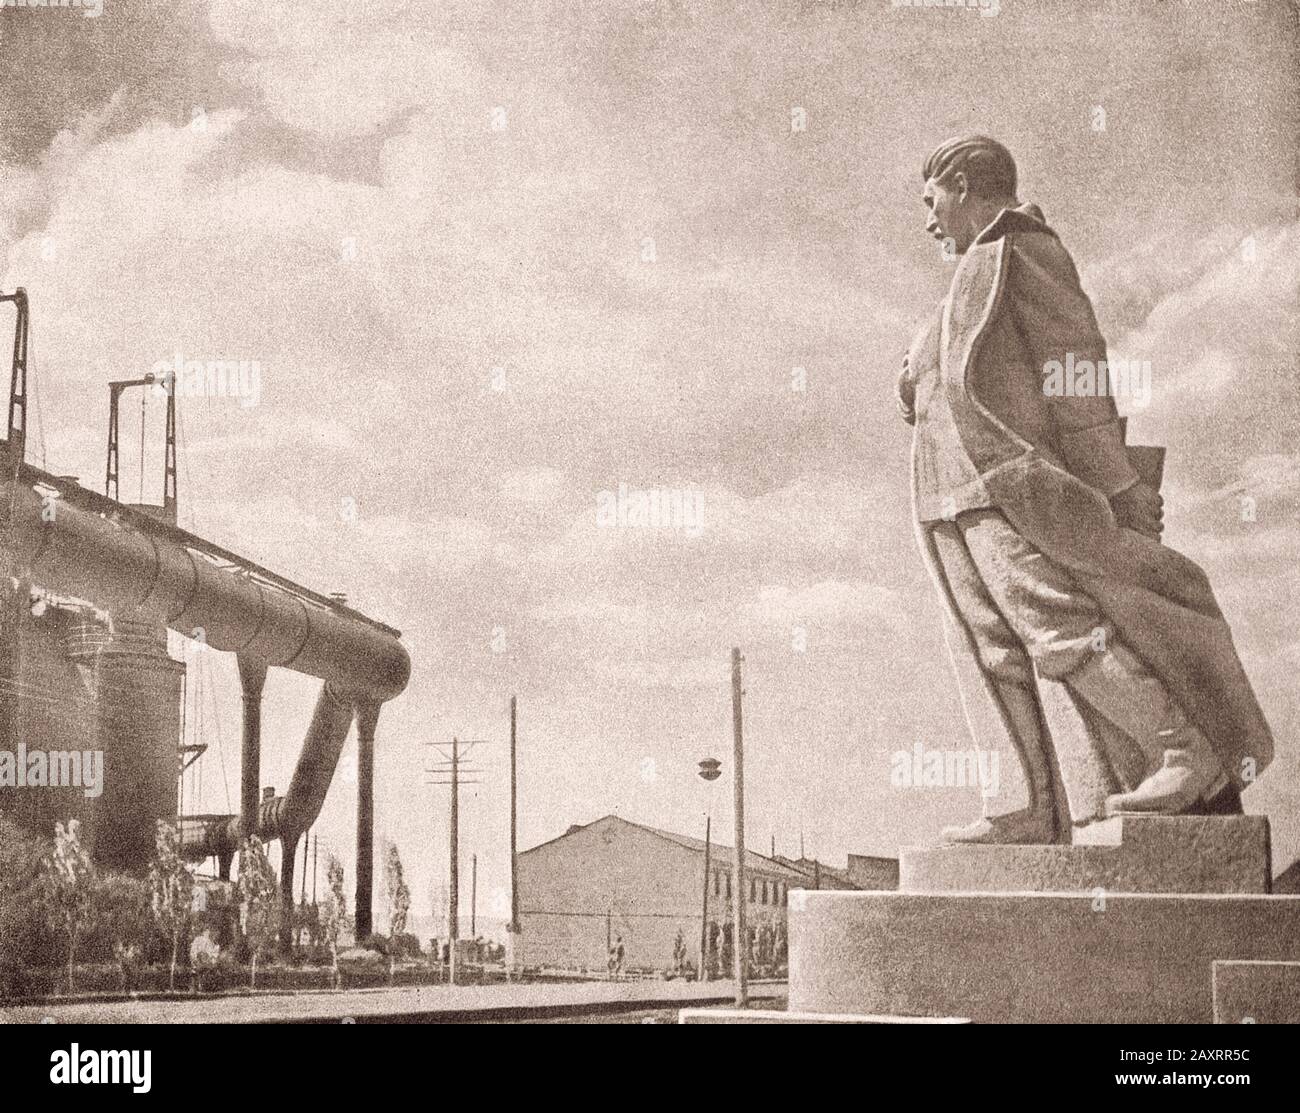 Rote Armee. Aus dem sowjetischen Propagandabuch von 1937. Denkmal für Stalin vor dem Hintergrund eines Industrieunternehmens. Stockfoto